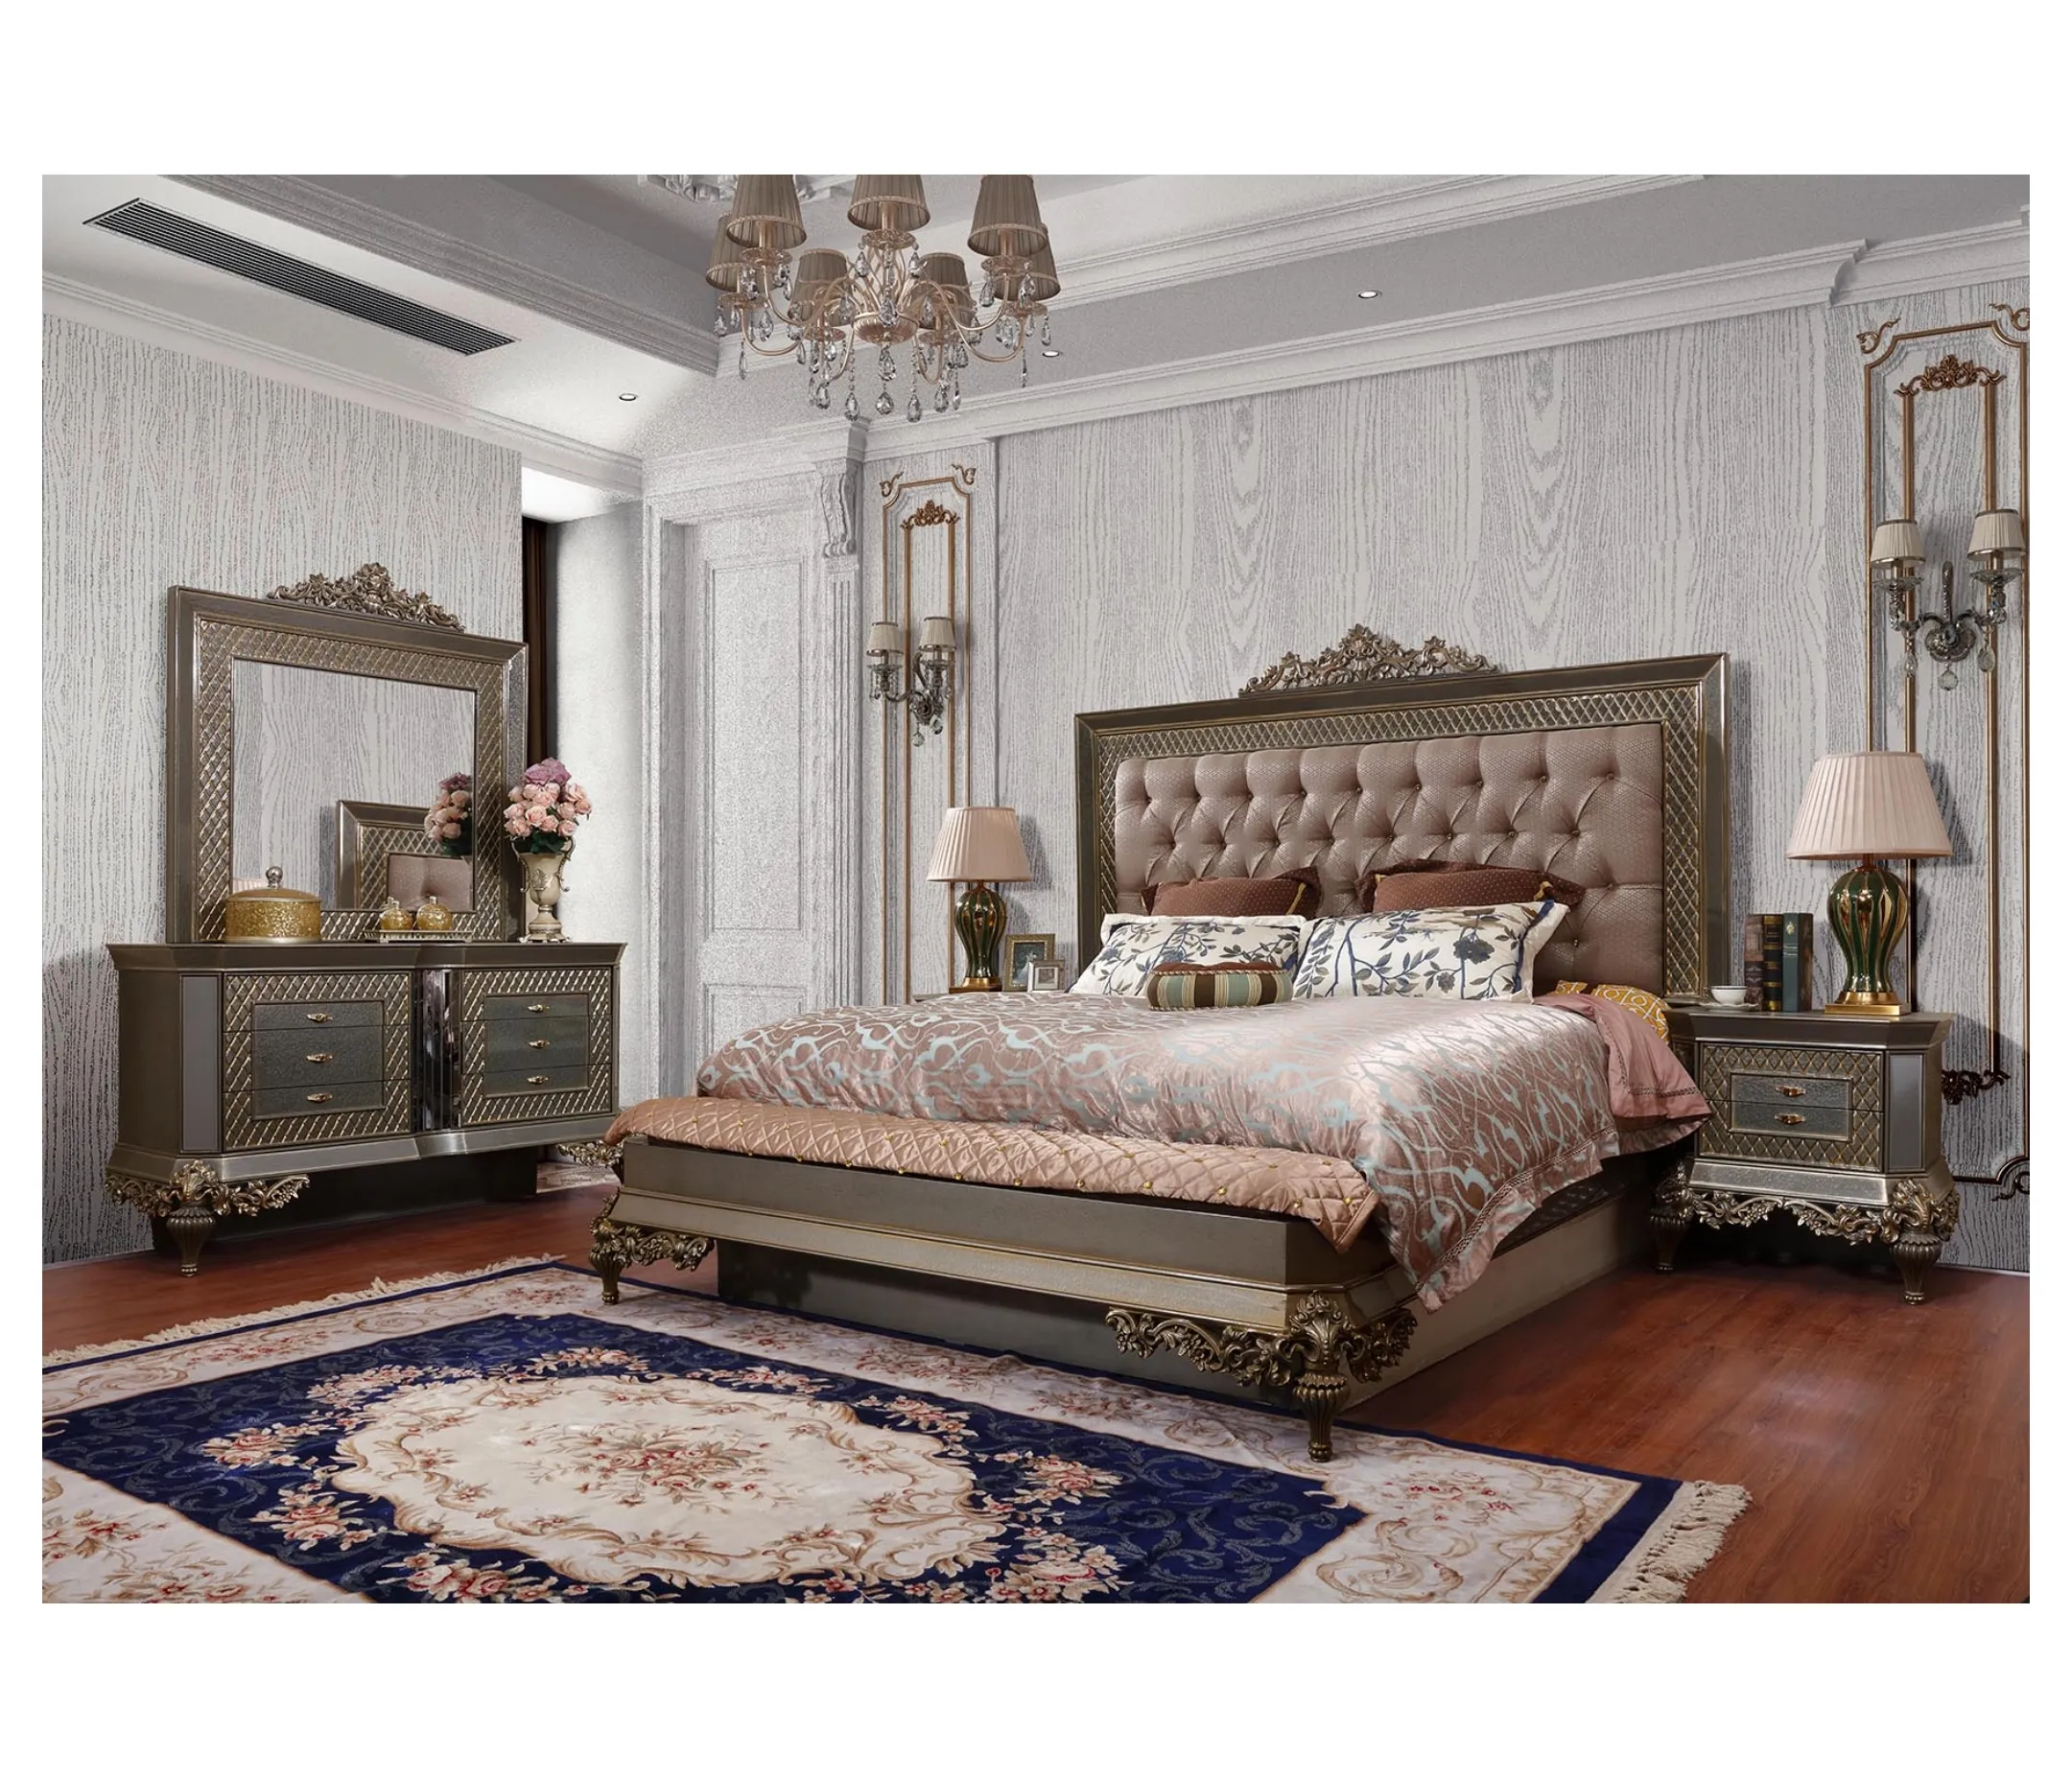 인 호텔 킹 침대 아메리칸 스타일 홈 가구 침실 세트 도매 클래식 가구 드레서 저렴한 침실 가구 GD17